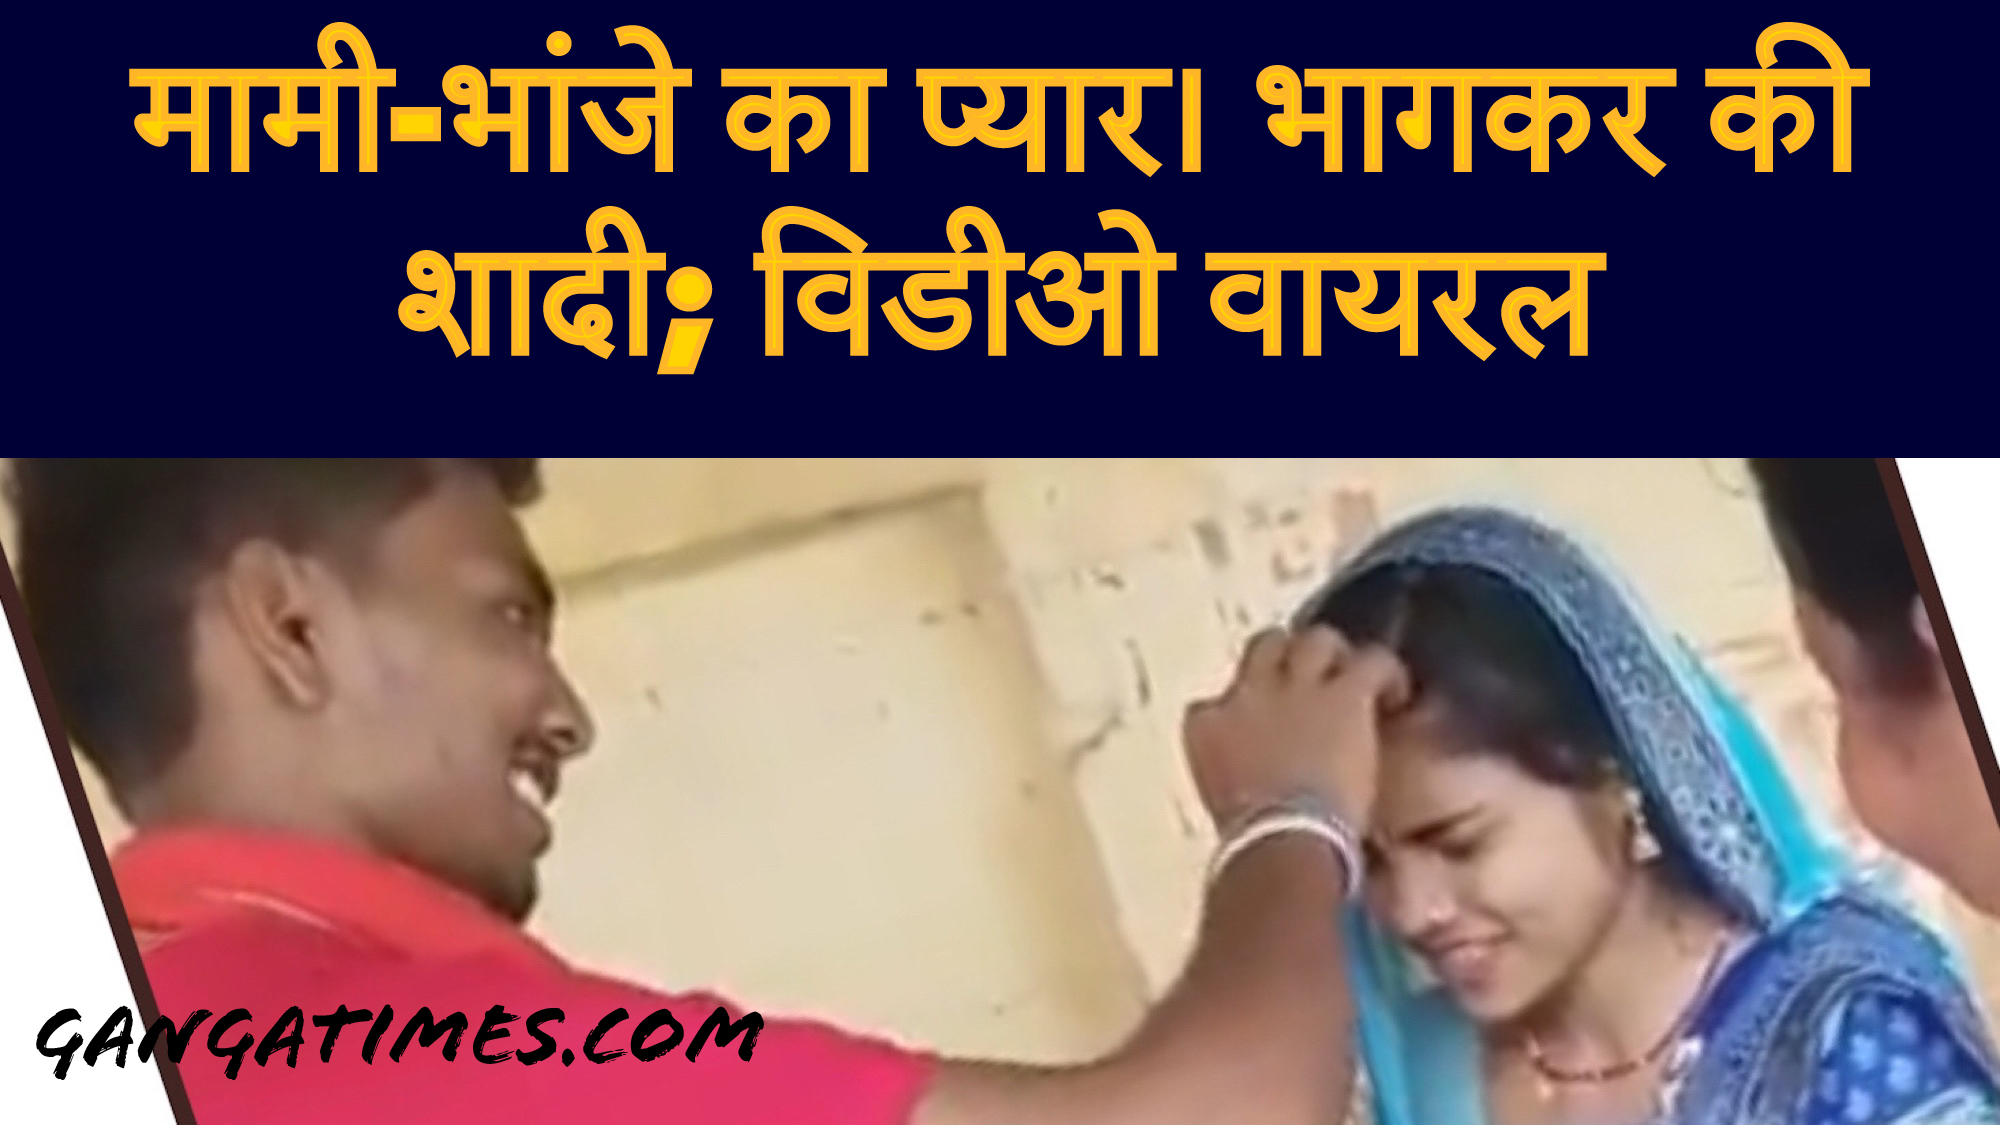 बिहार में मामी को भांजे से हुआ प्यार, सामाजिक बंधनों को तोड़ की शादी: देखें वीडियो